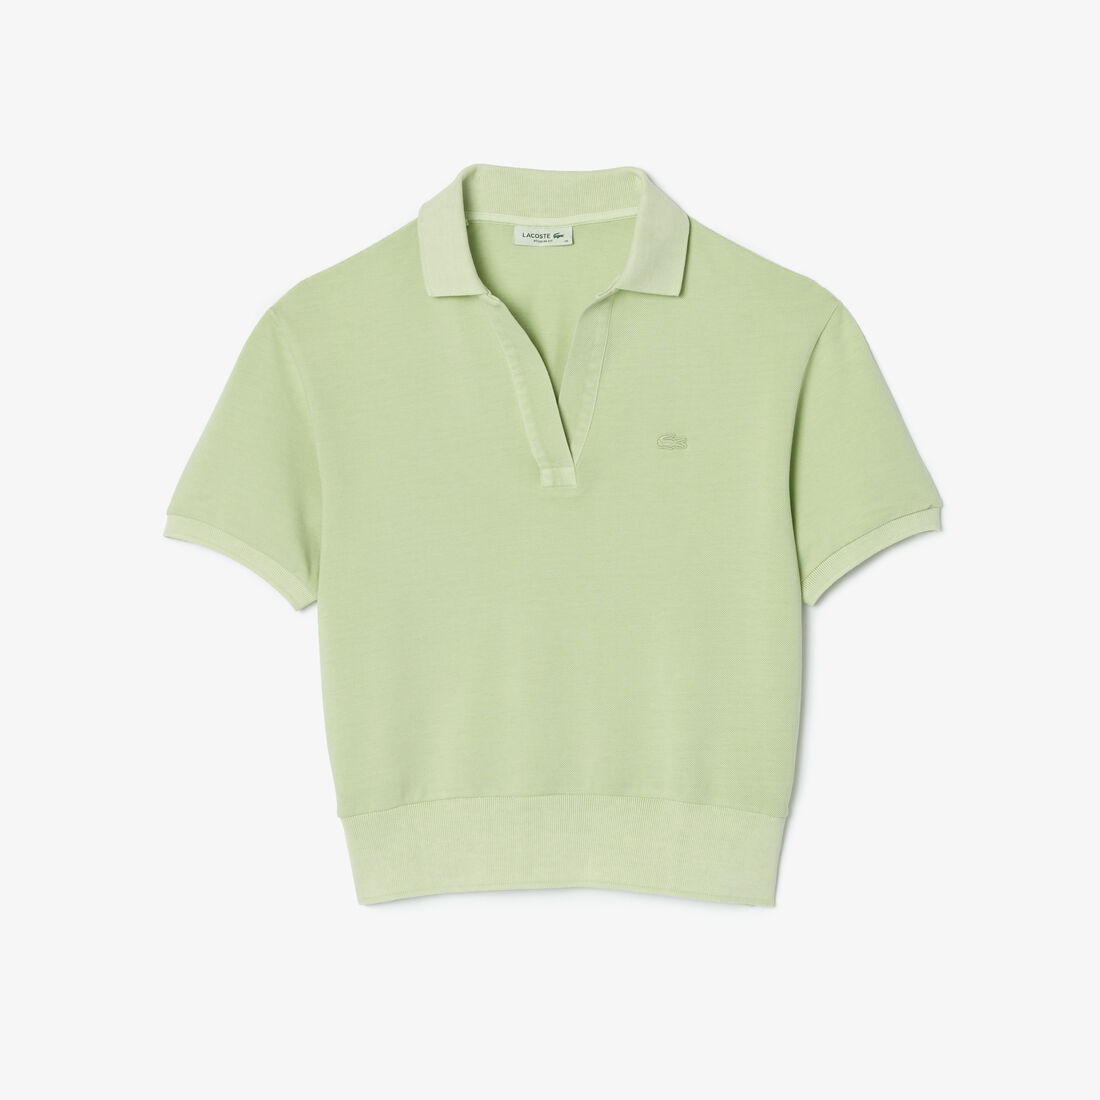 Natural Dyed Cotton Pique Polo Shirt - DF7185-00-IP8